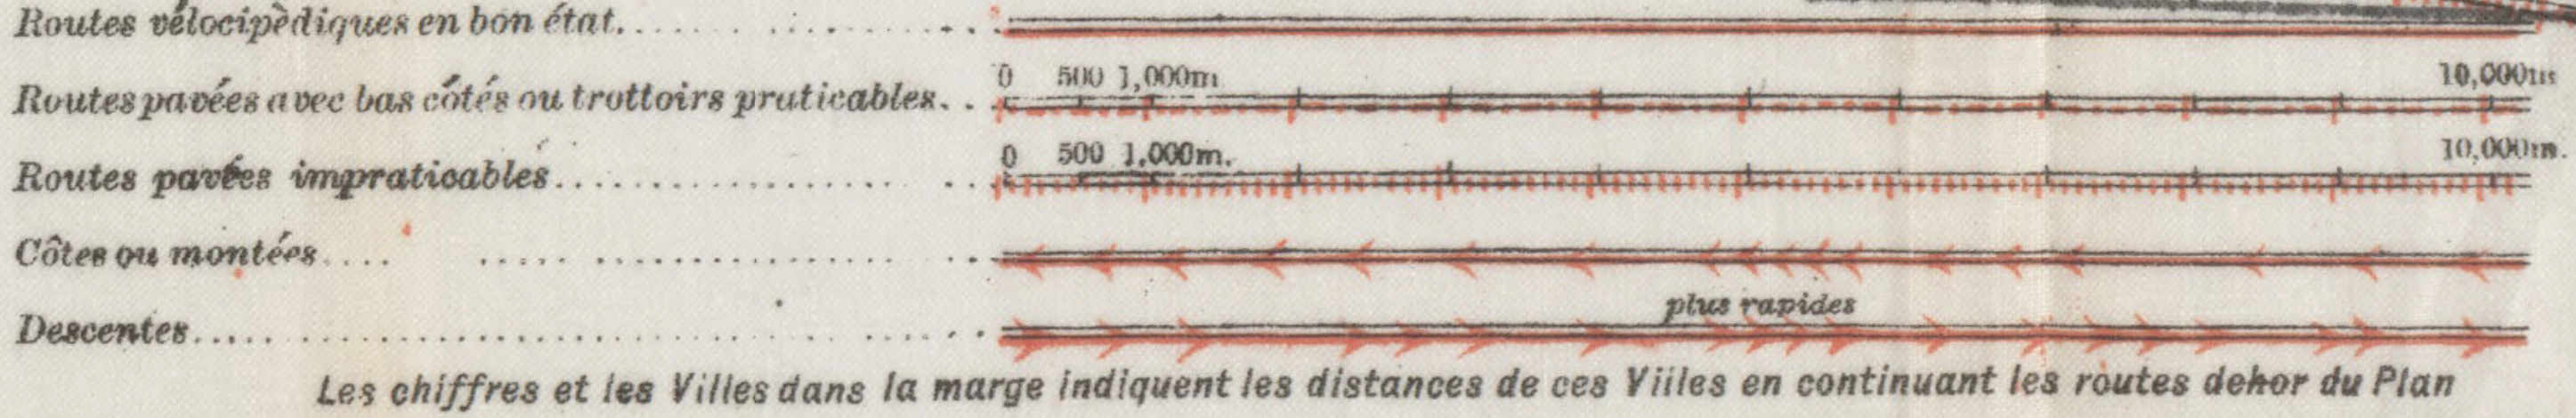 Légende de la carte Plan vélo des environs de Paris (Fin du 19iéme siècle - 1893) sur HARVARD Library 